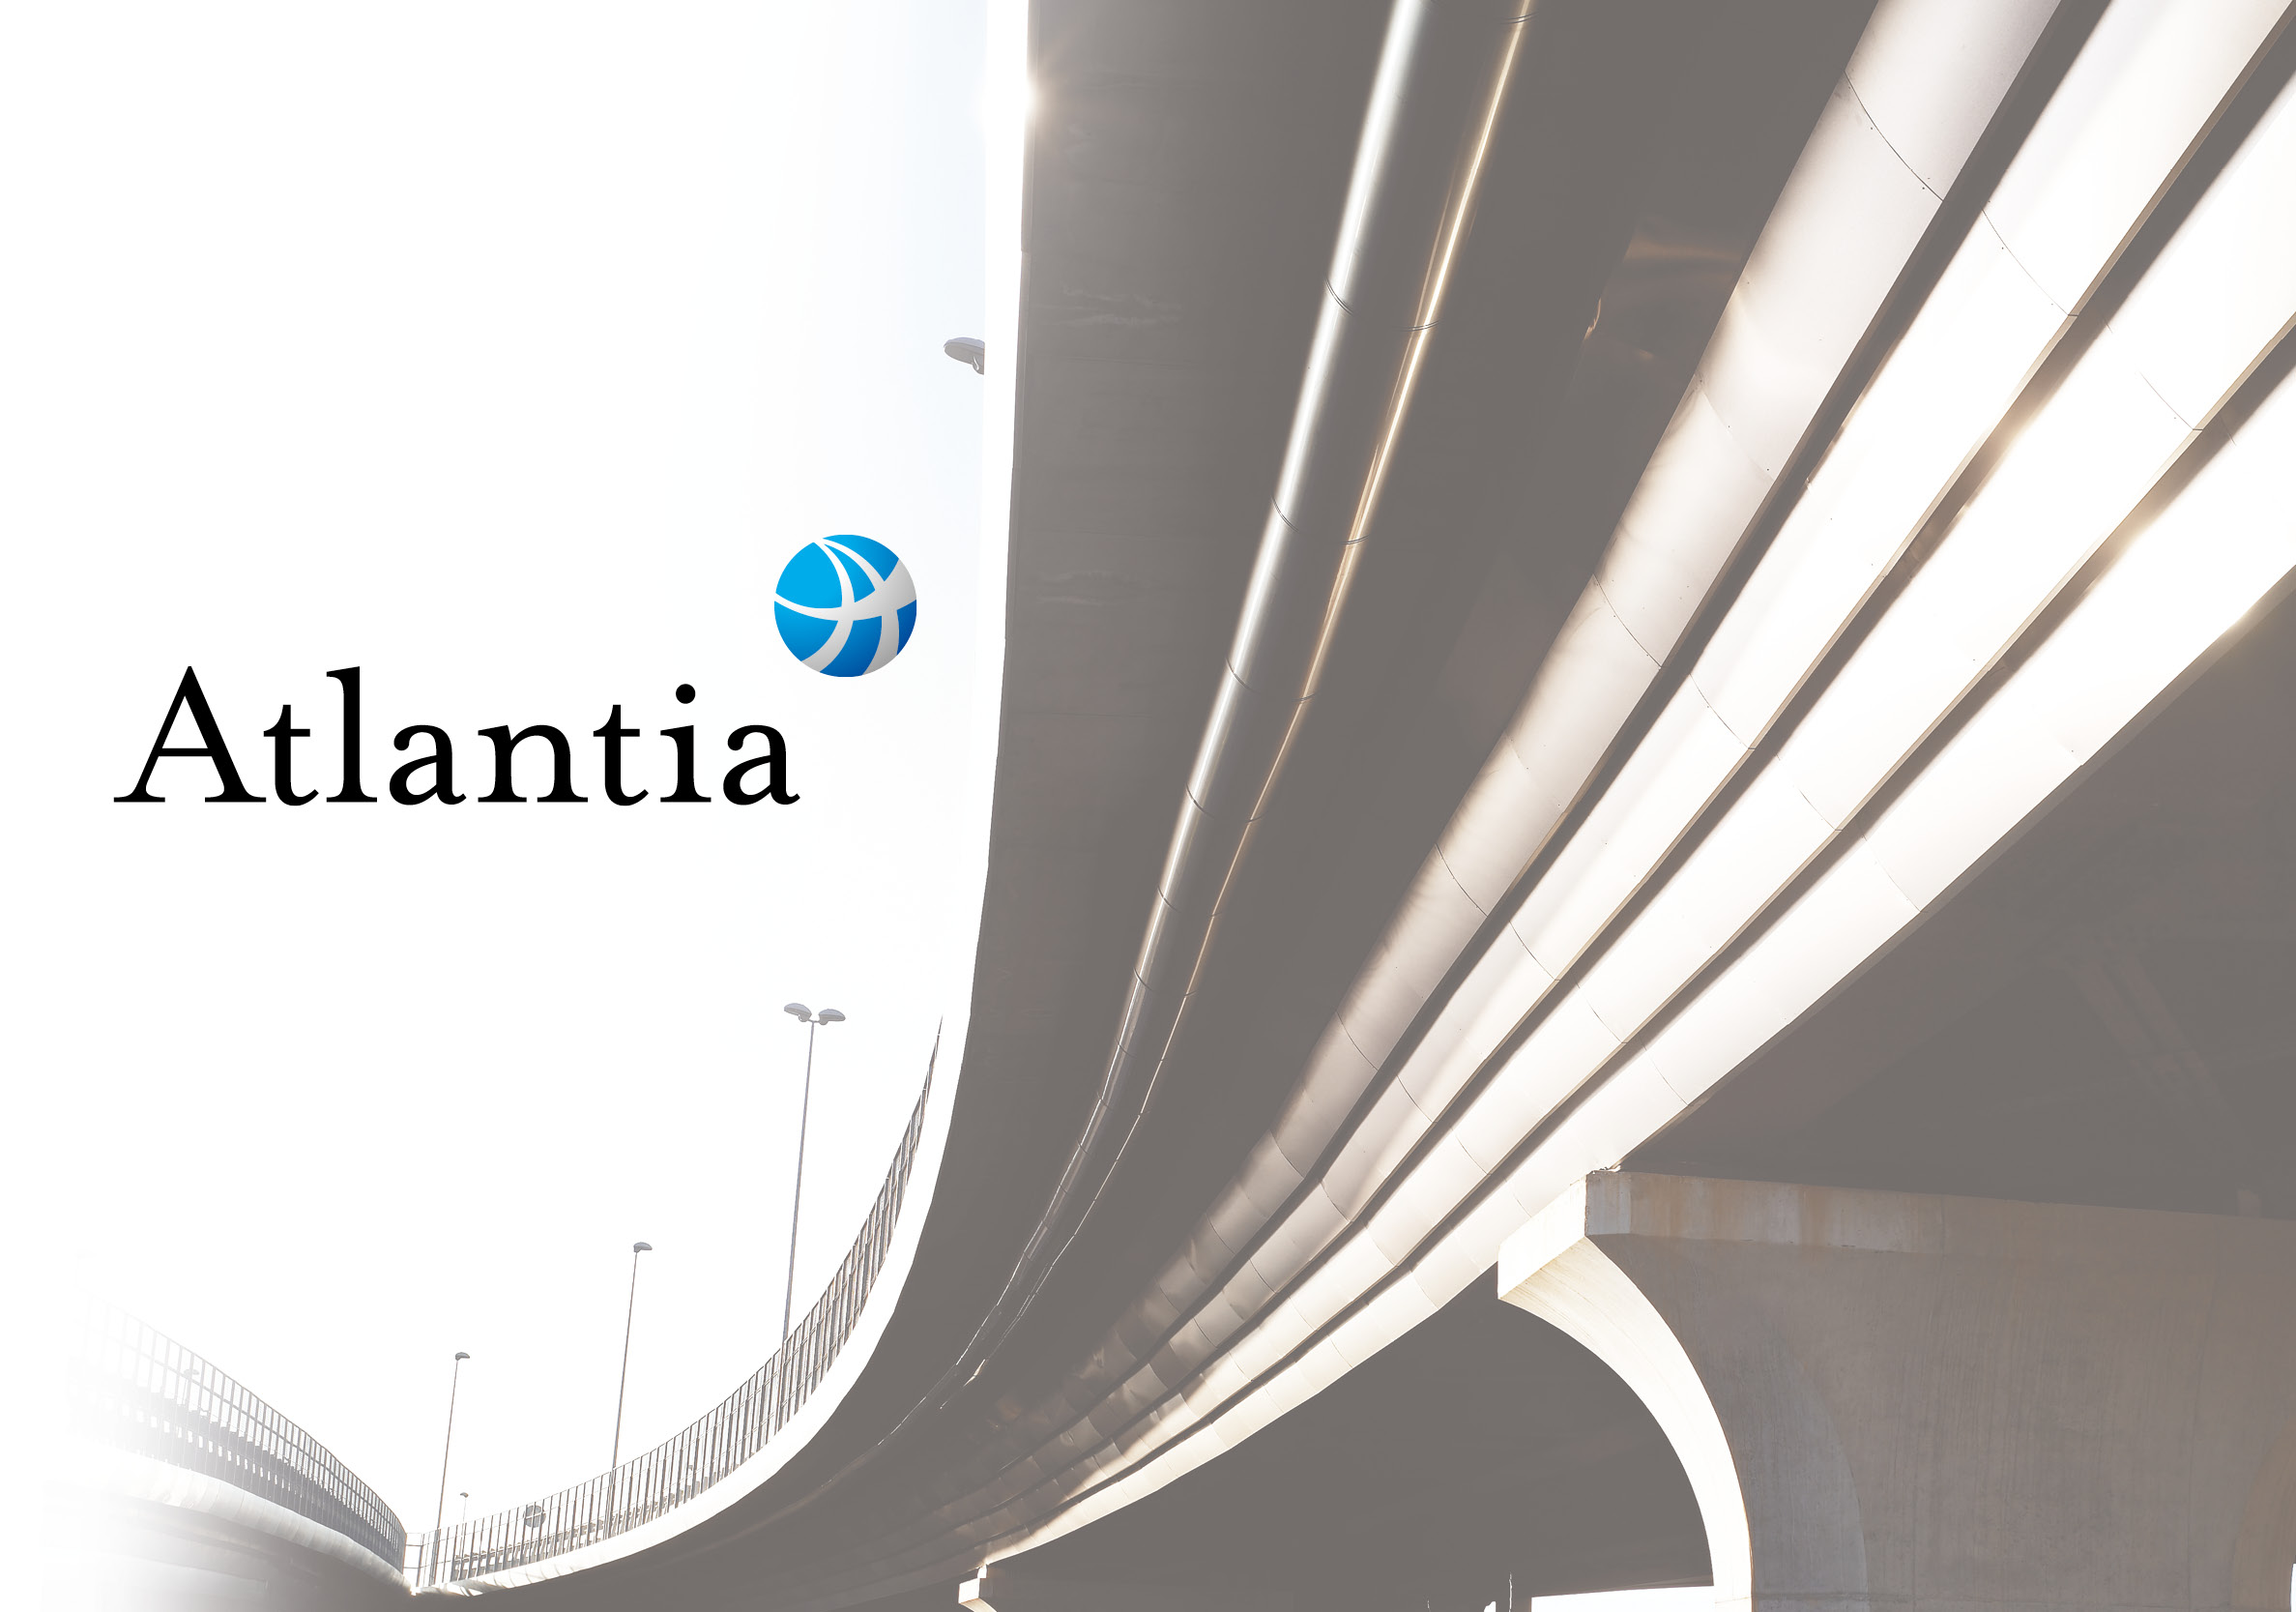 La collaborazione con il Gruppo Atlantia è iniziata nel 1997 e si è estesa ad Autostrade per l’Italia e alla sue controllate (Spea, Autostrade Tech, Telepass) sia per i documenti finanziari, come il bilancio integrato, e quelli istituzionali, come la brochure corporate.